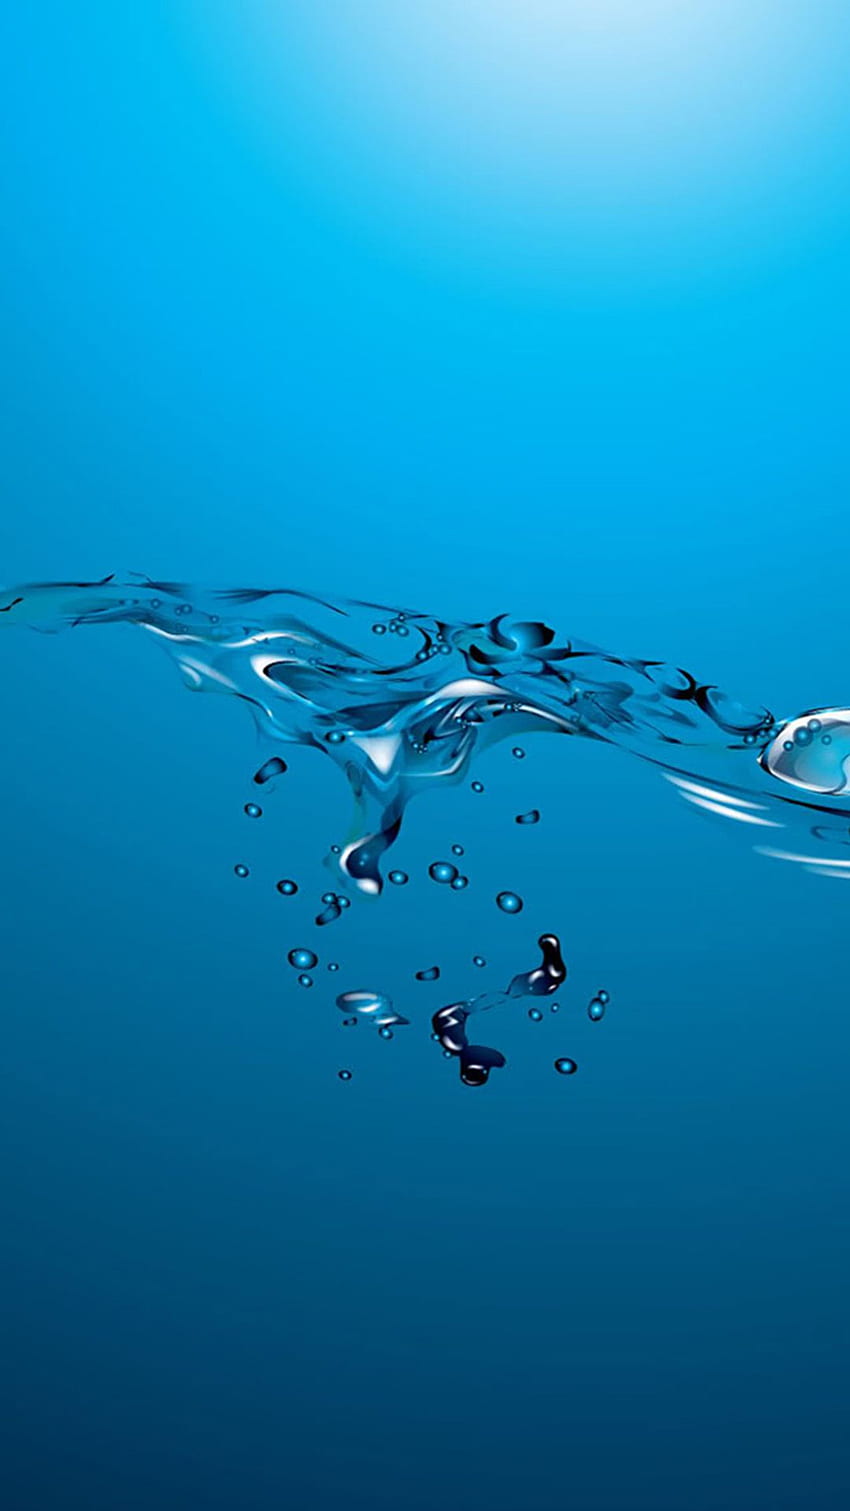 Abstract Ocean Water Splash iPhone 8 HD phone wallpaper | Pxfuel